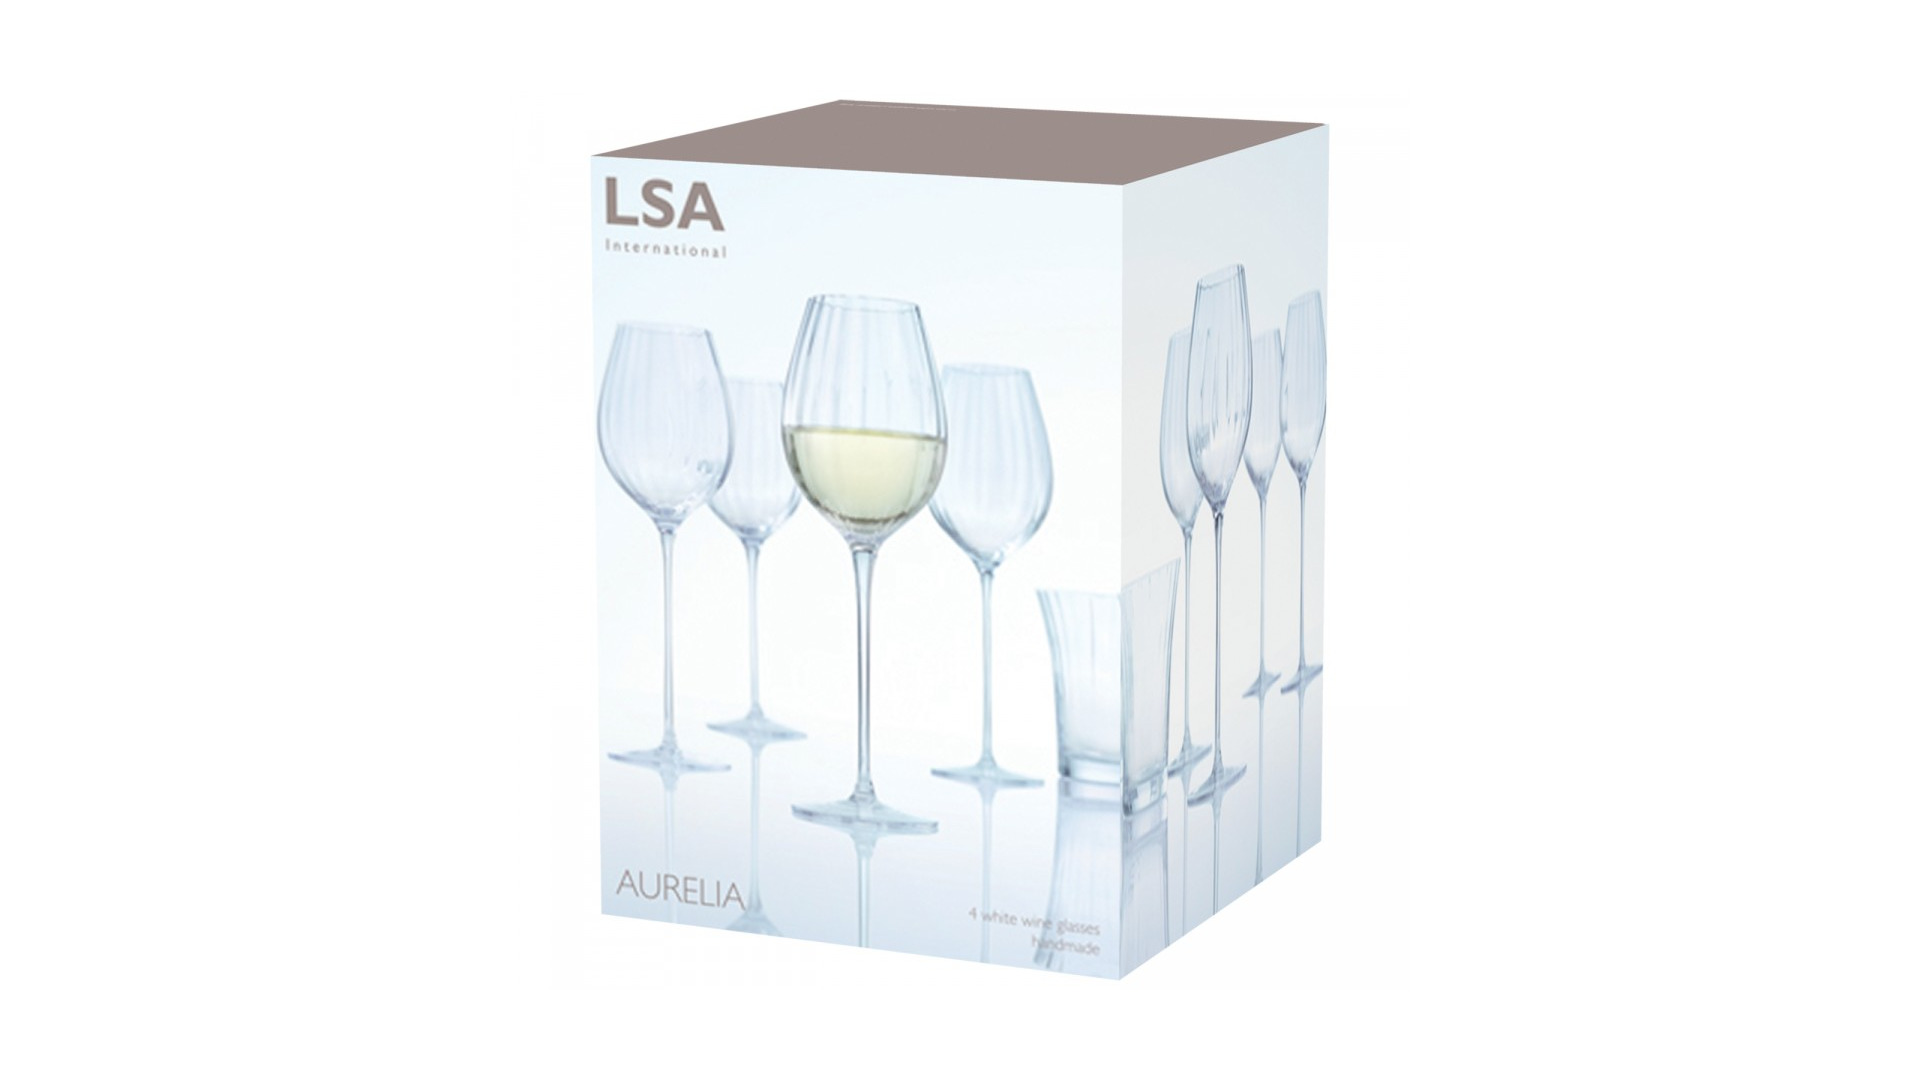 Набор бокалов для белого вина LSA International Aurelia 430 мл, 4 шт, стекло